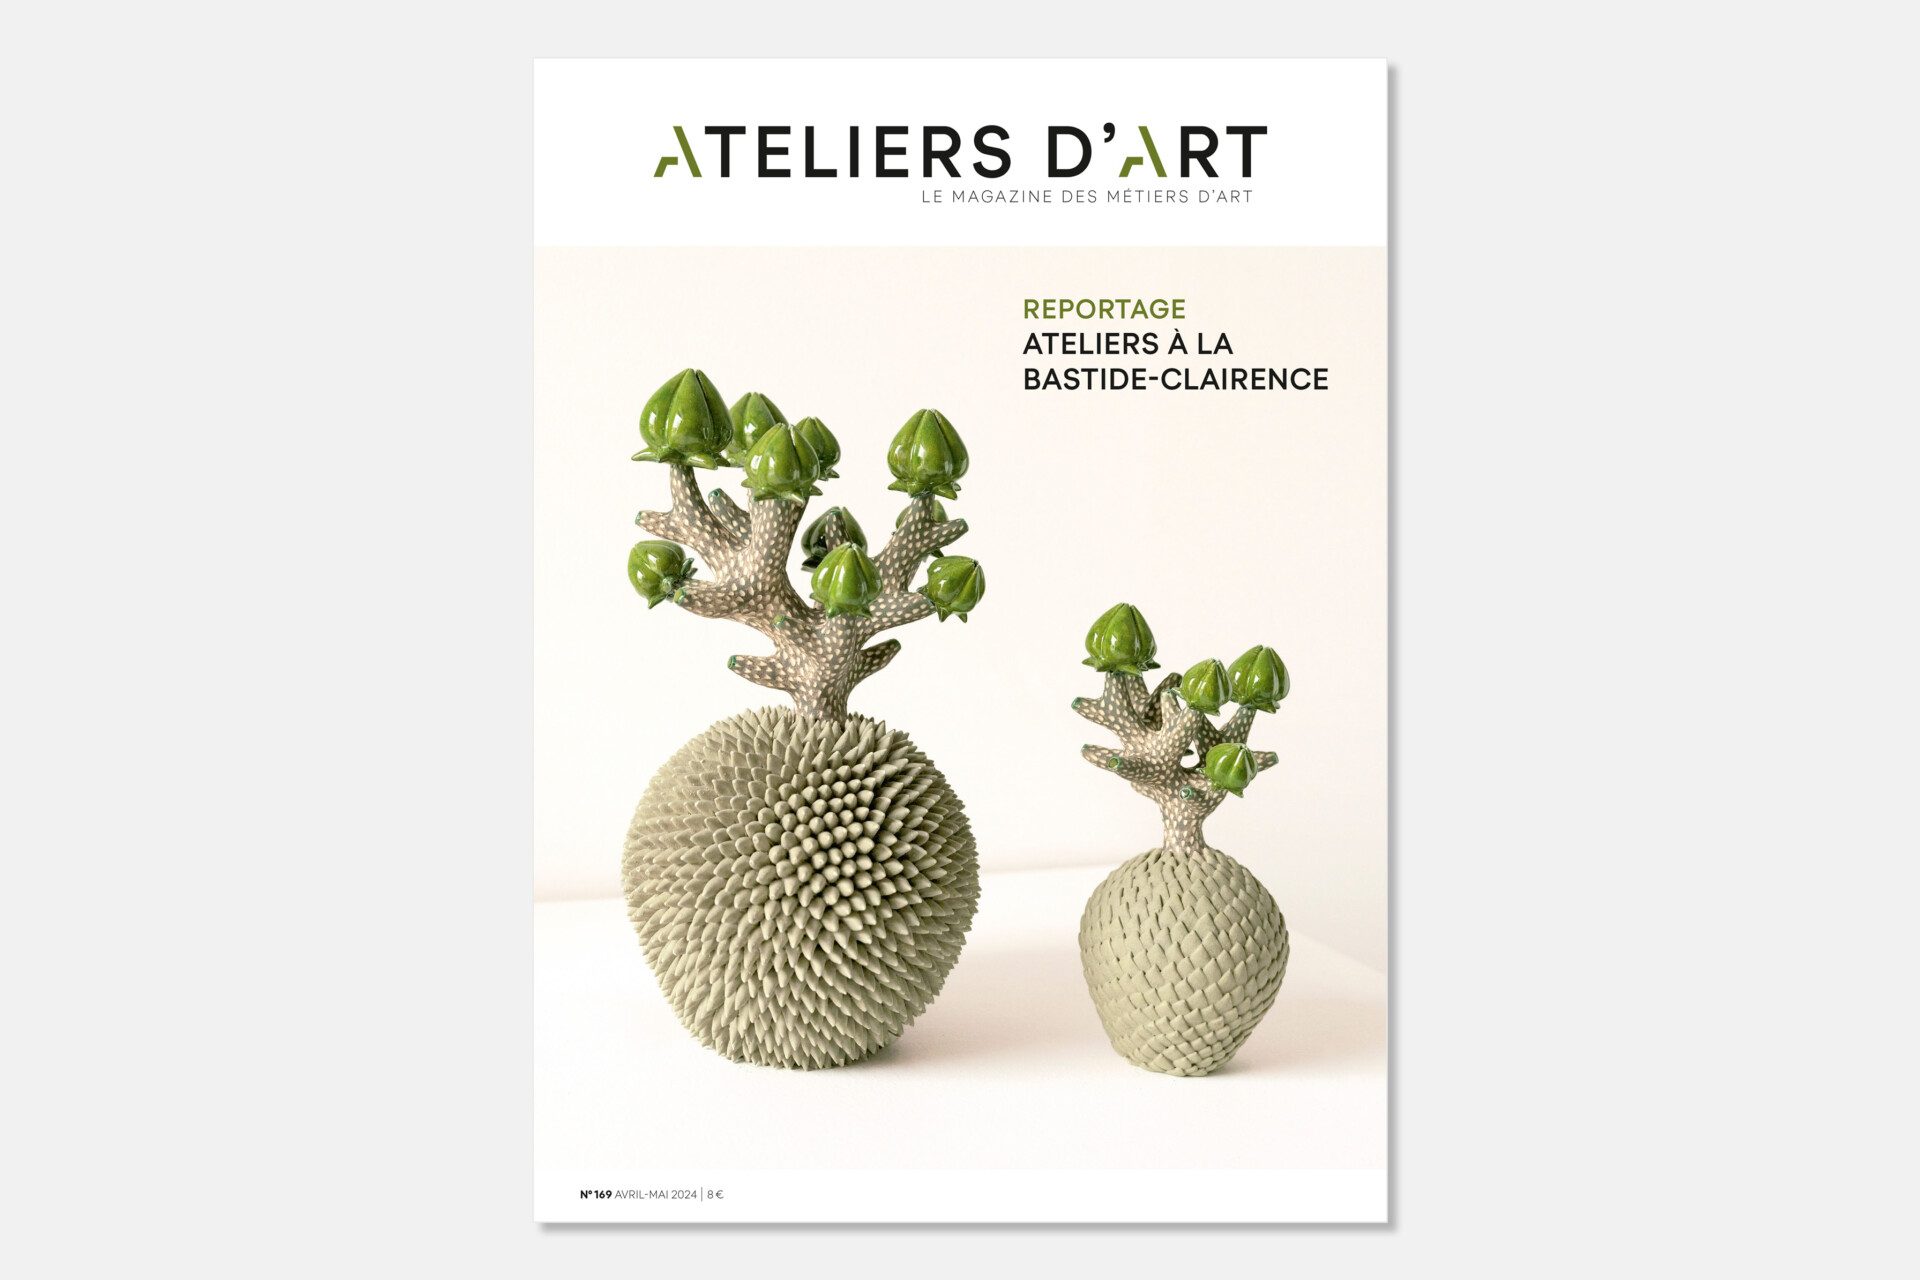 Editions Ateliers d'art de France - magazine Ateliers d'art